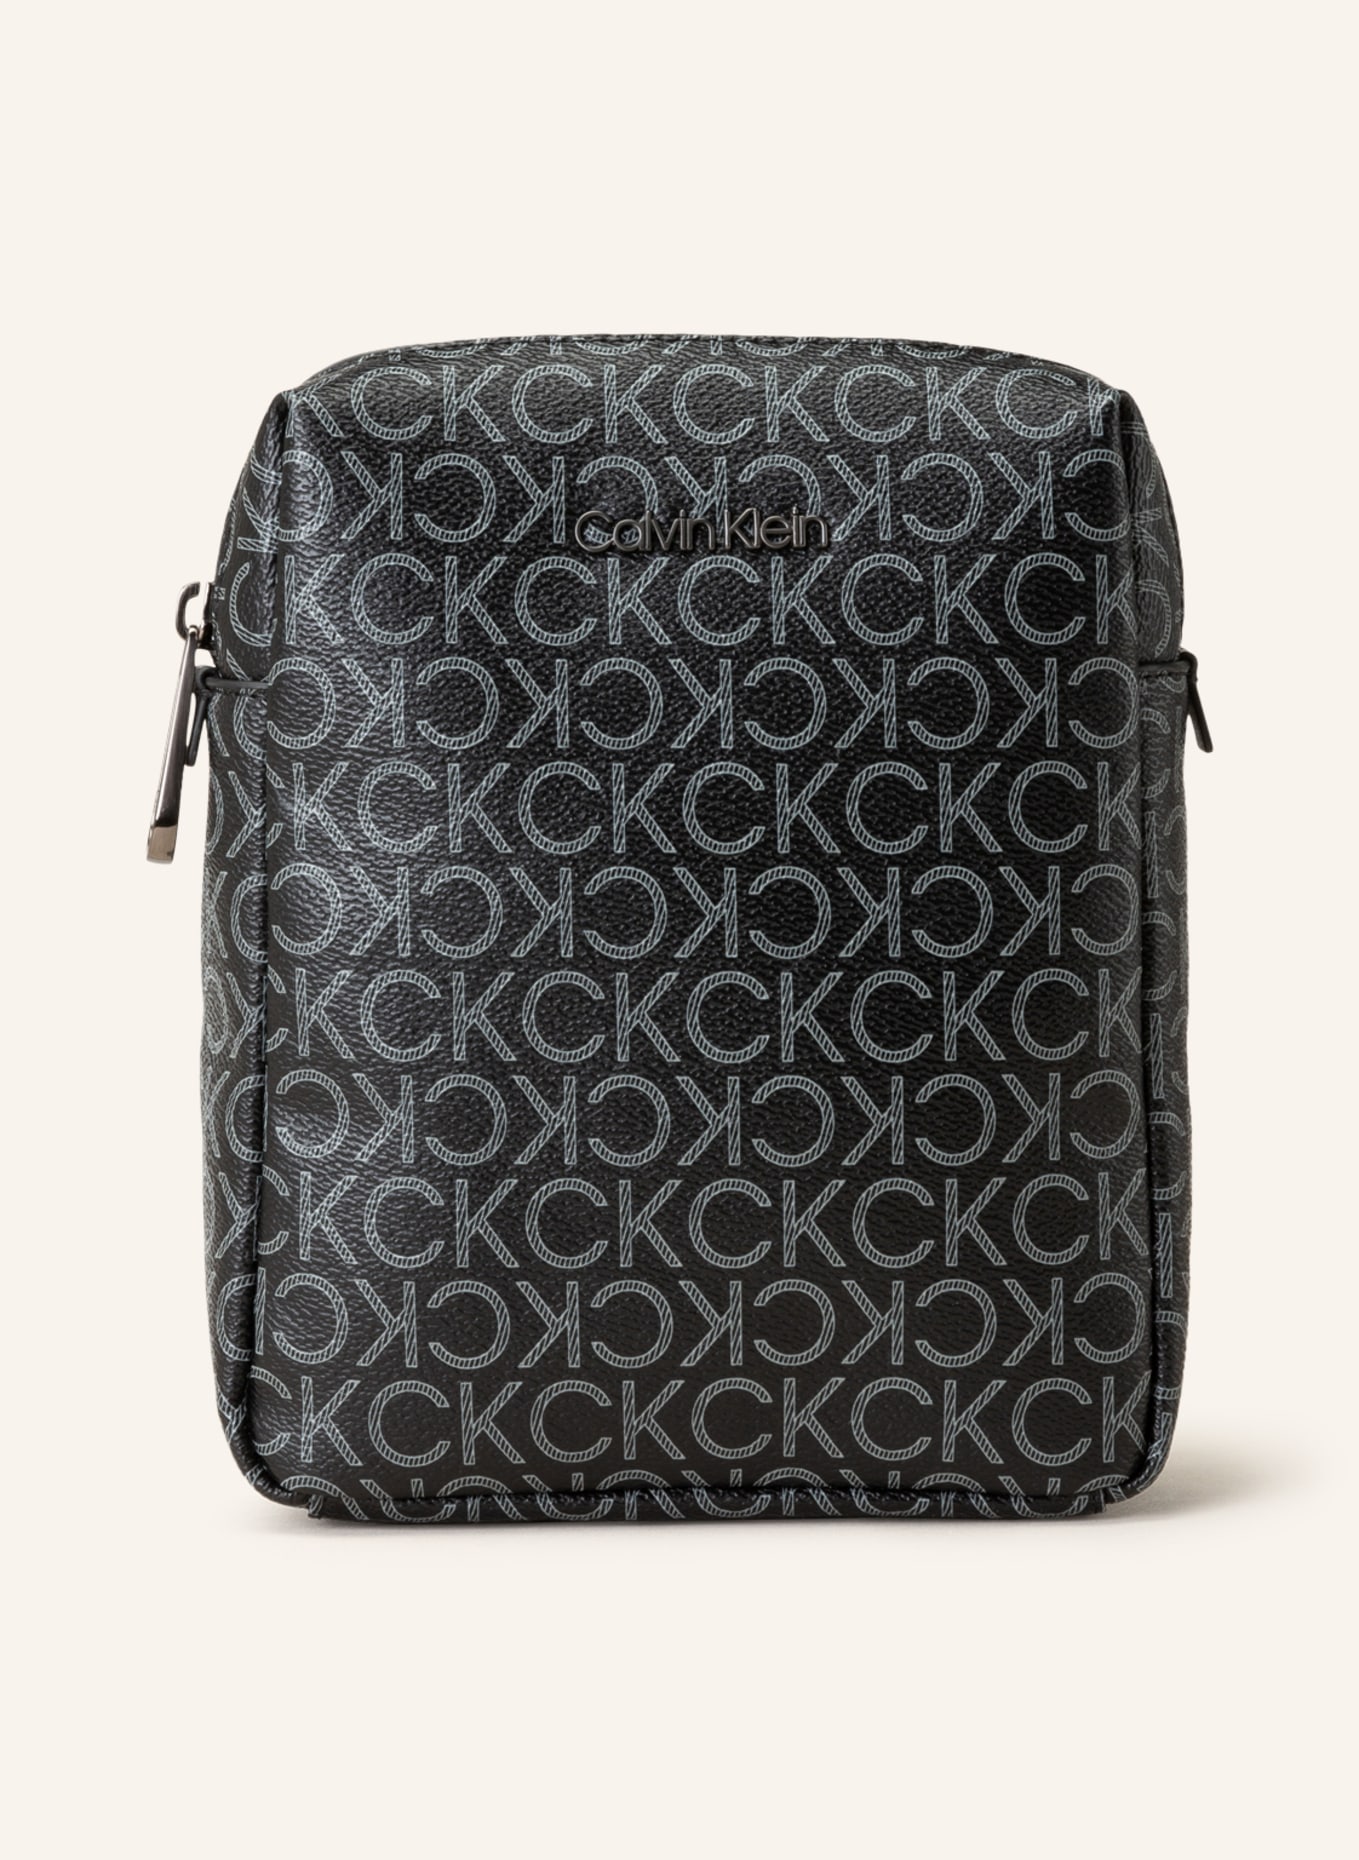 Calvin Klein Shoulder bag, Color: BLACK (Image 1)